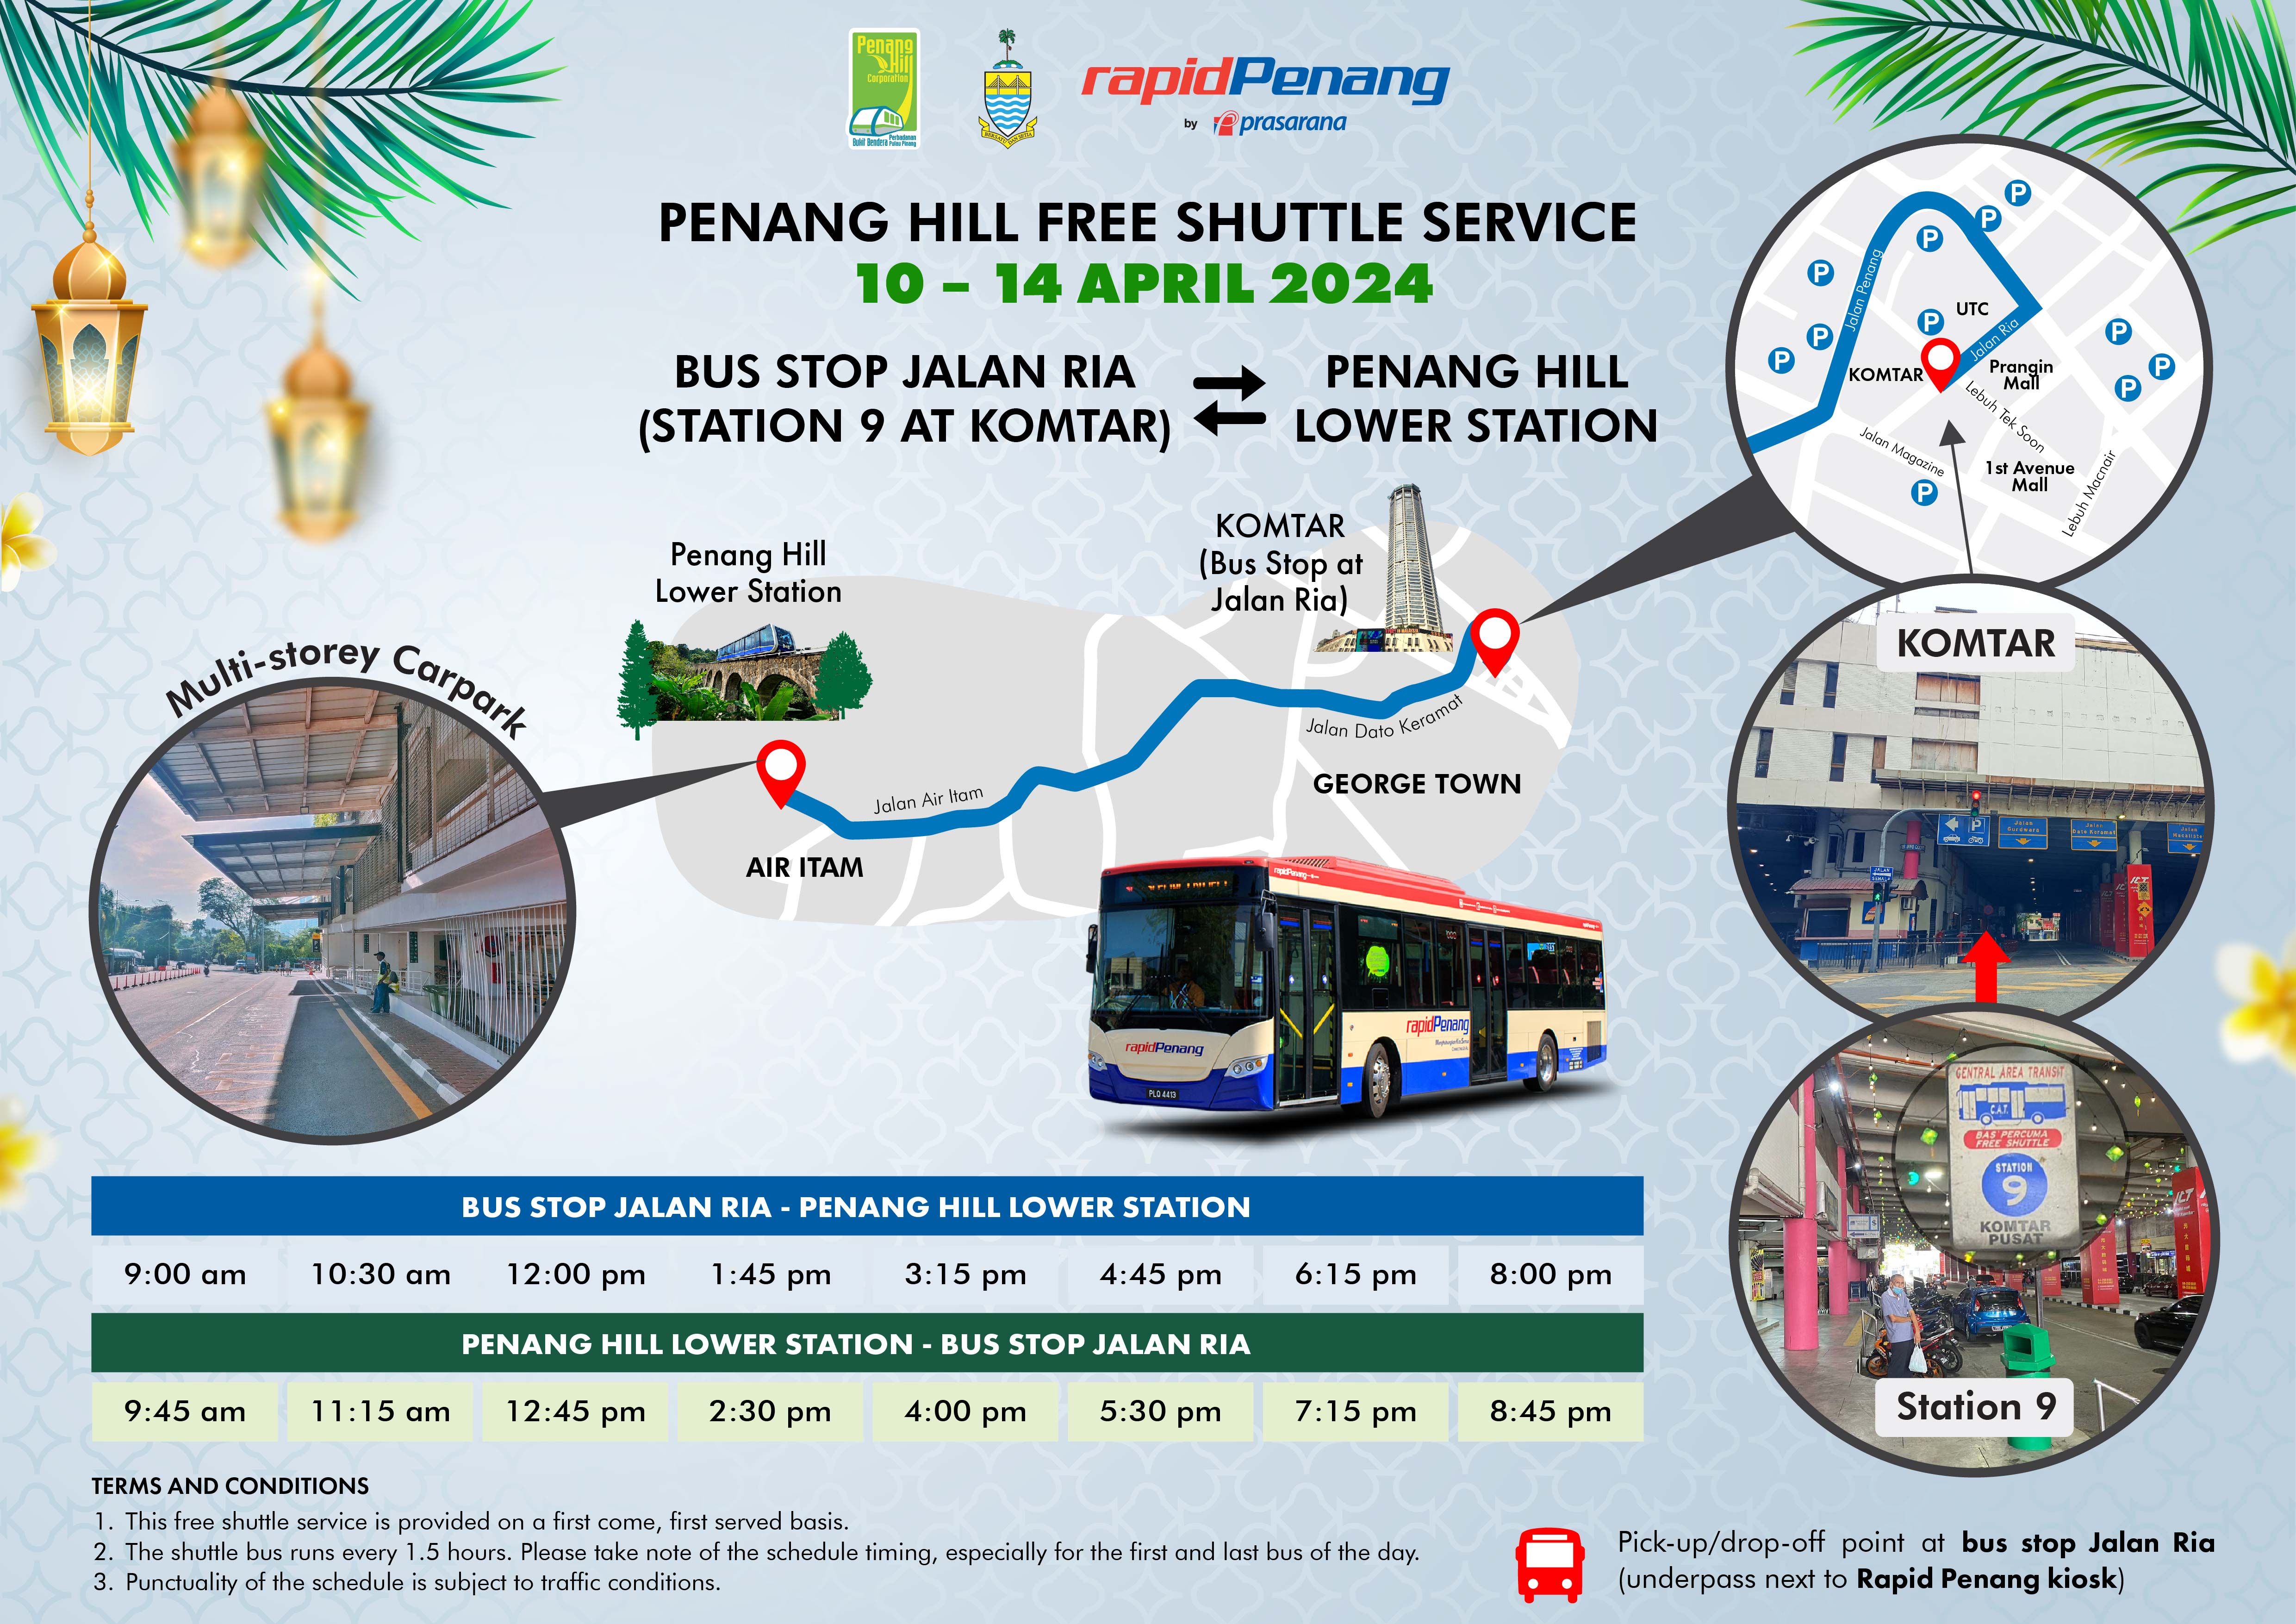 Penang Hill Free Shuttle Service (10 - 14 April 2024)